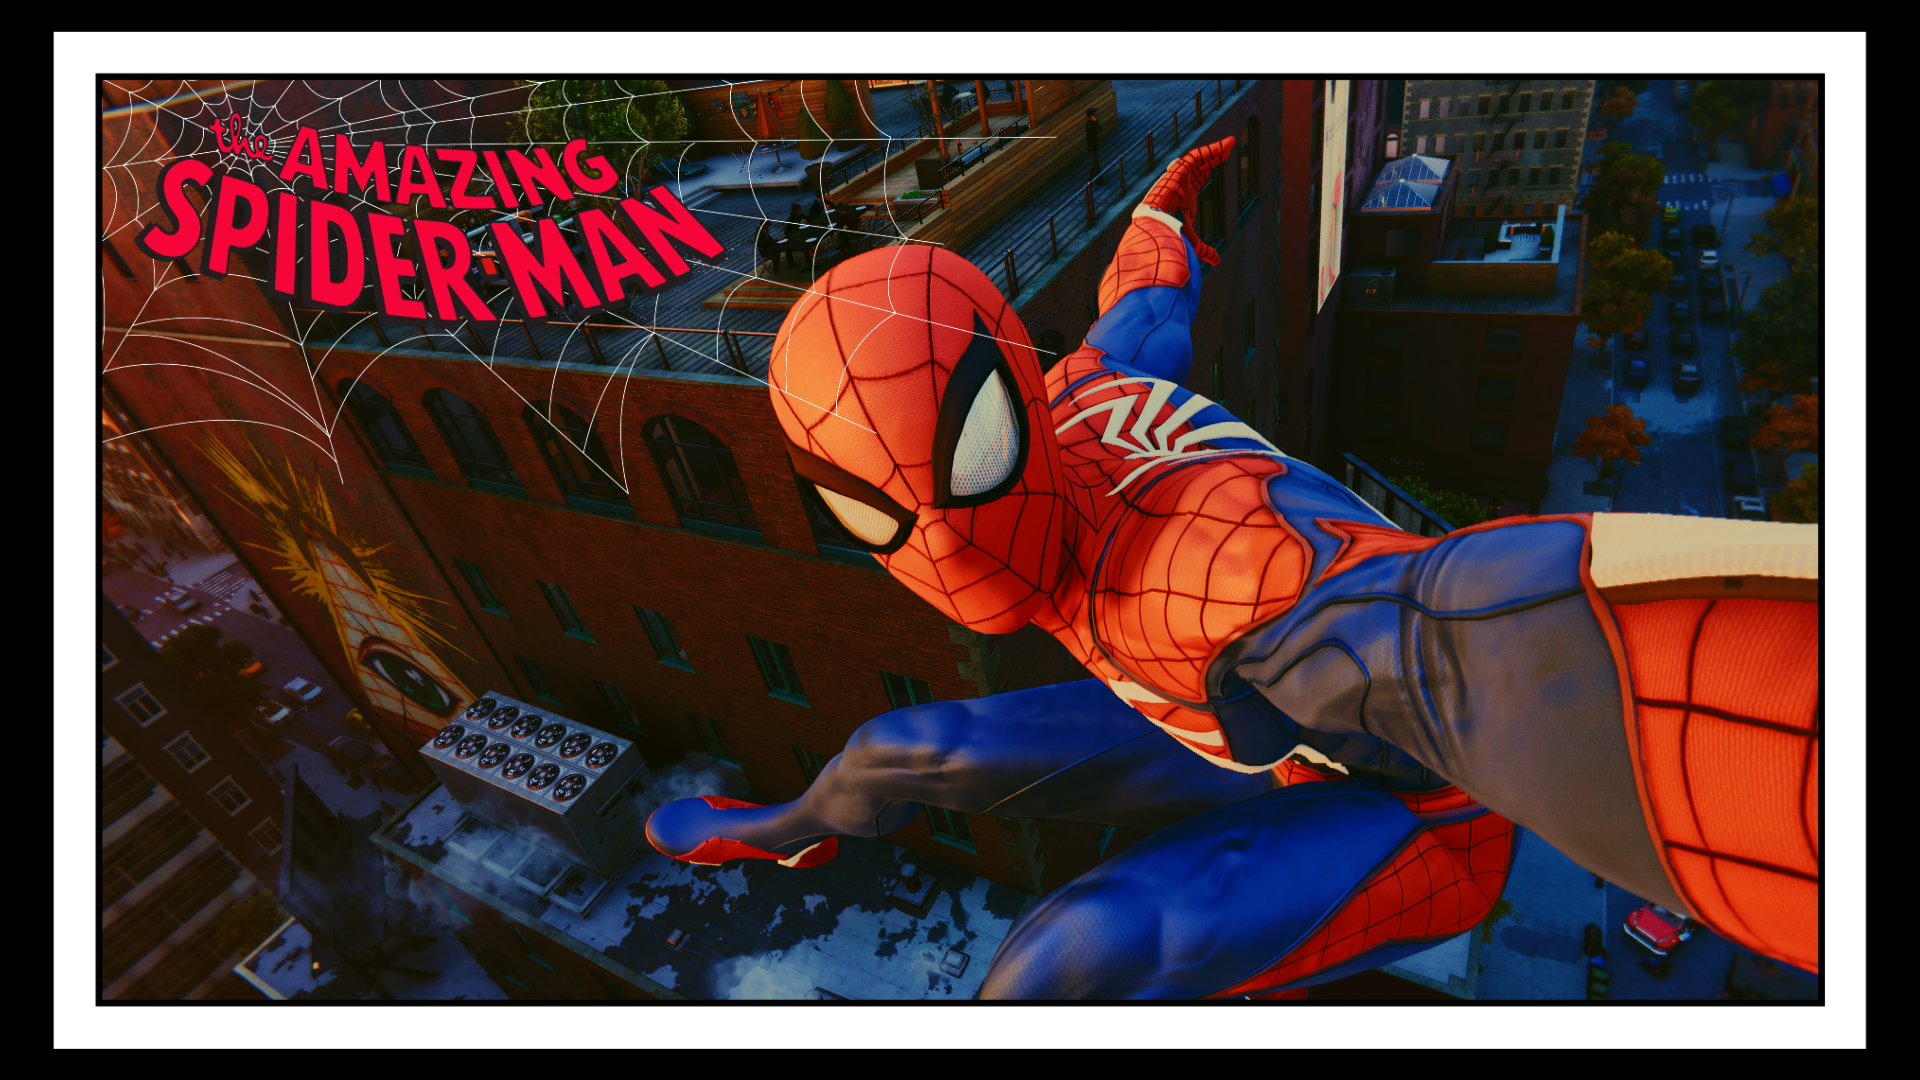 World Building Spider-Man's Manhattan with Substance